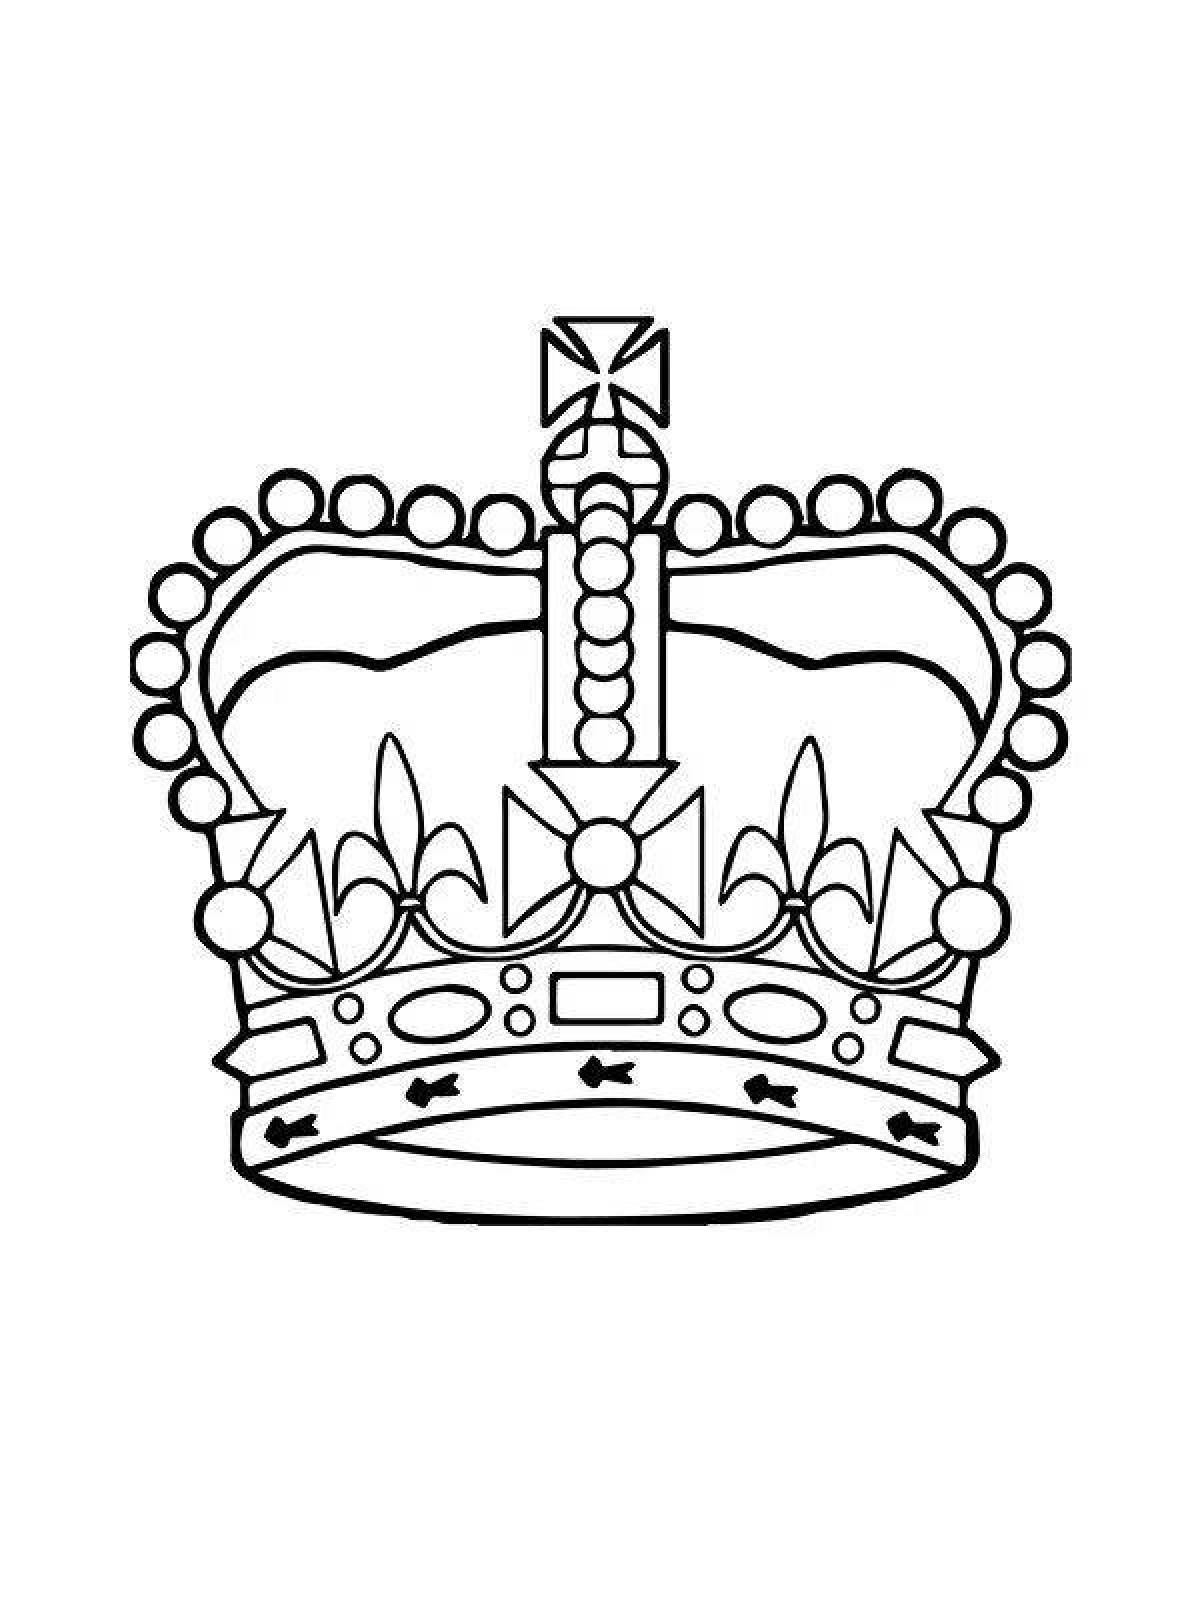 Королевская корона раскраска